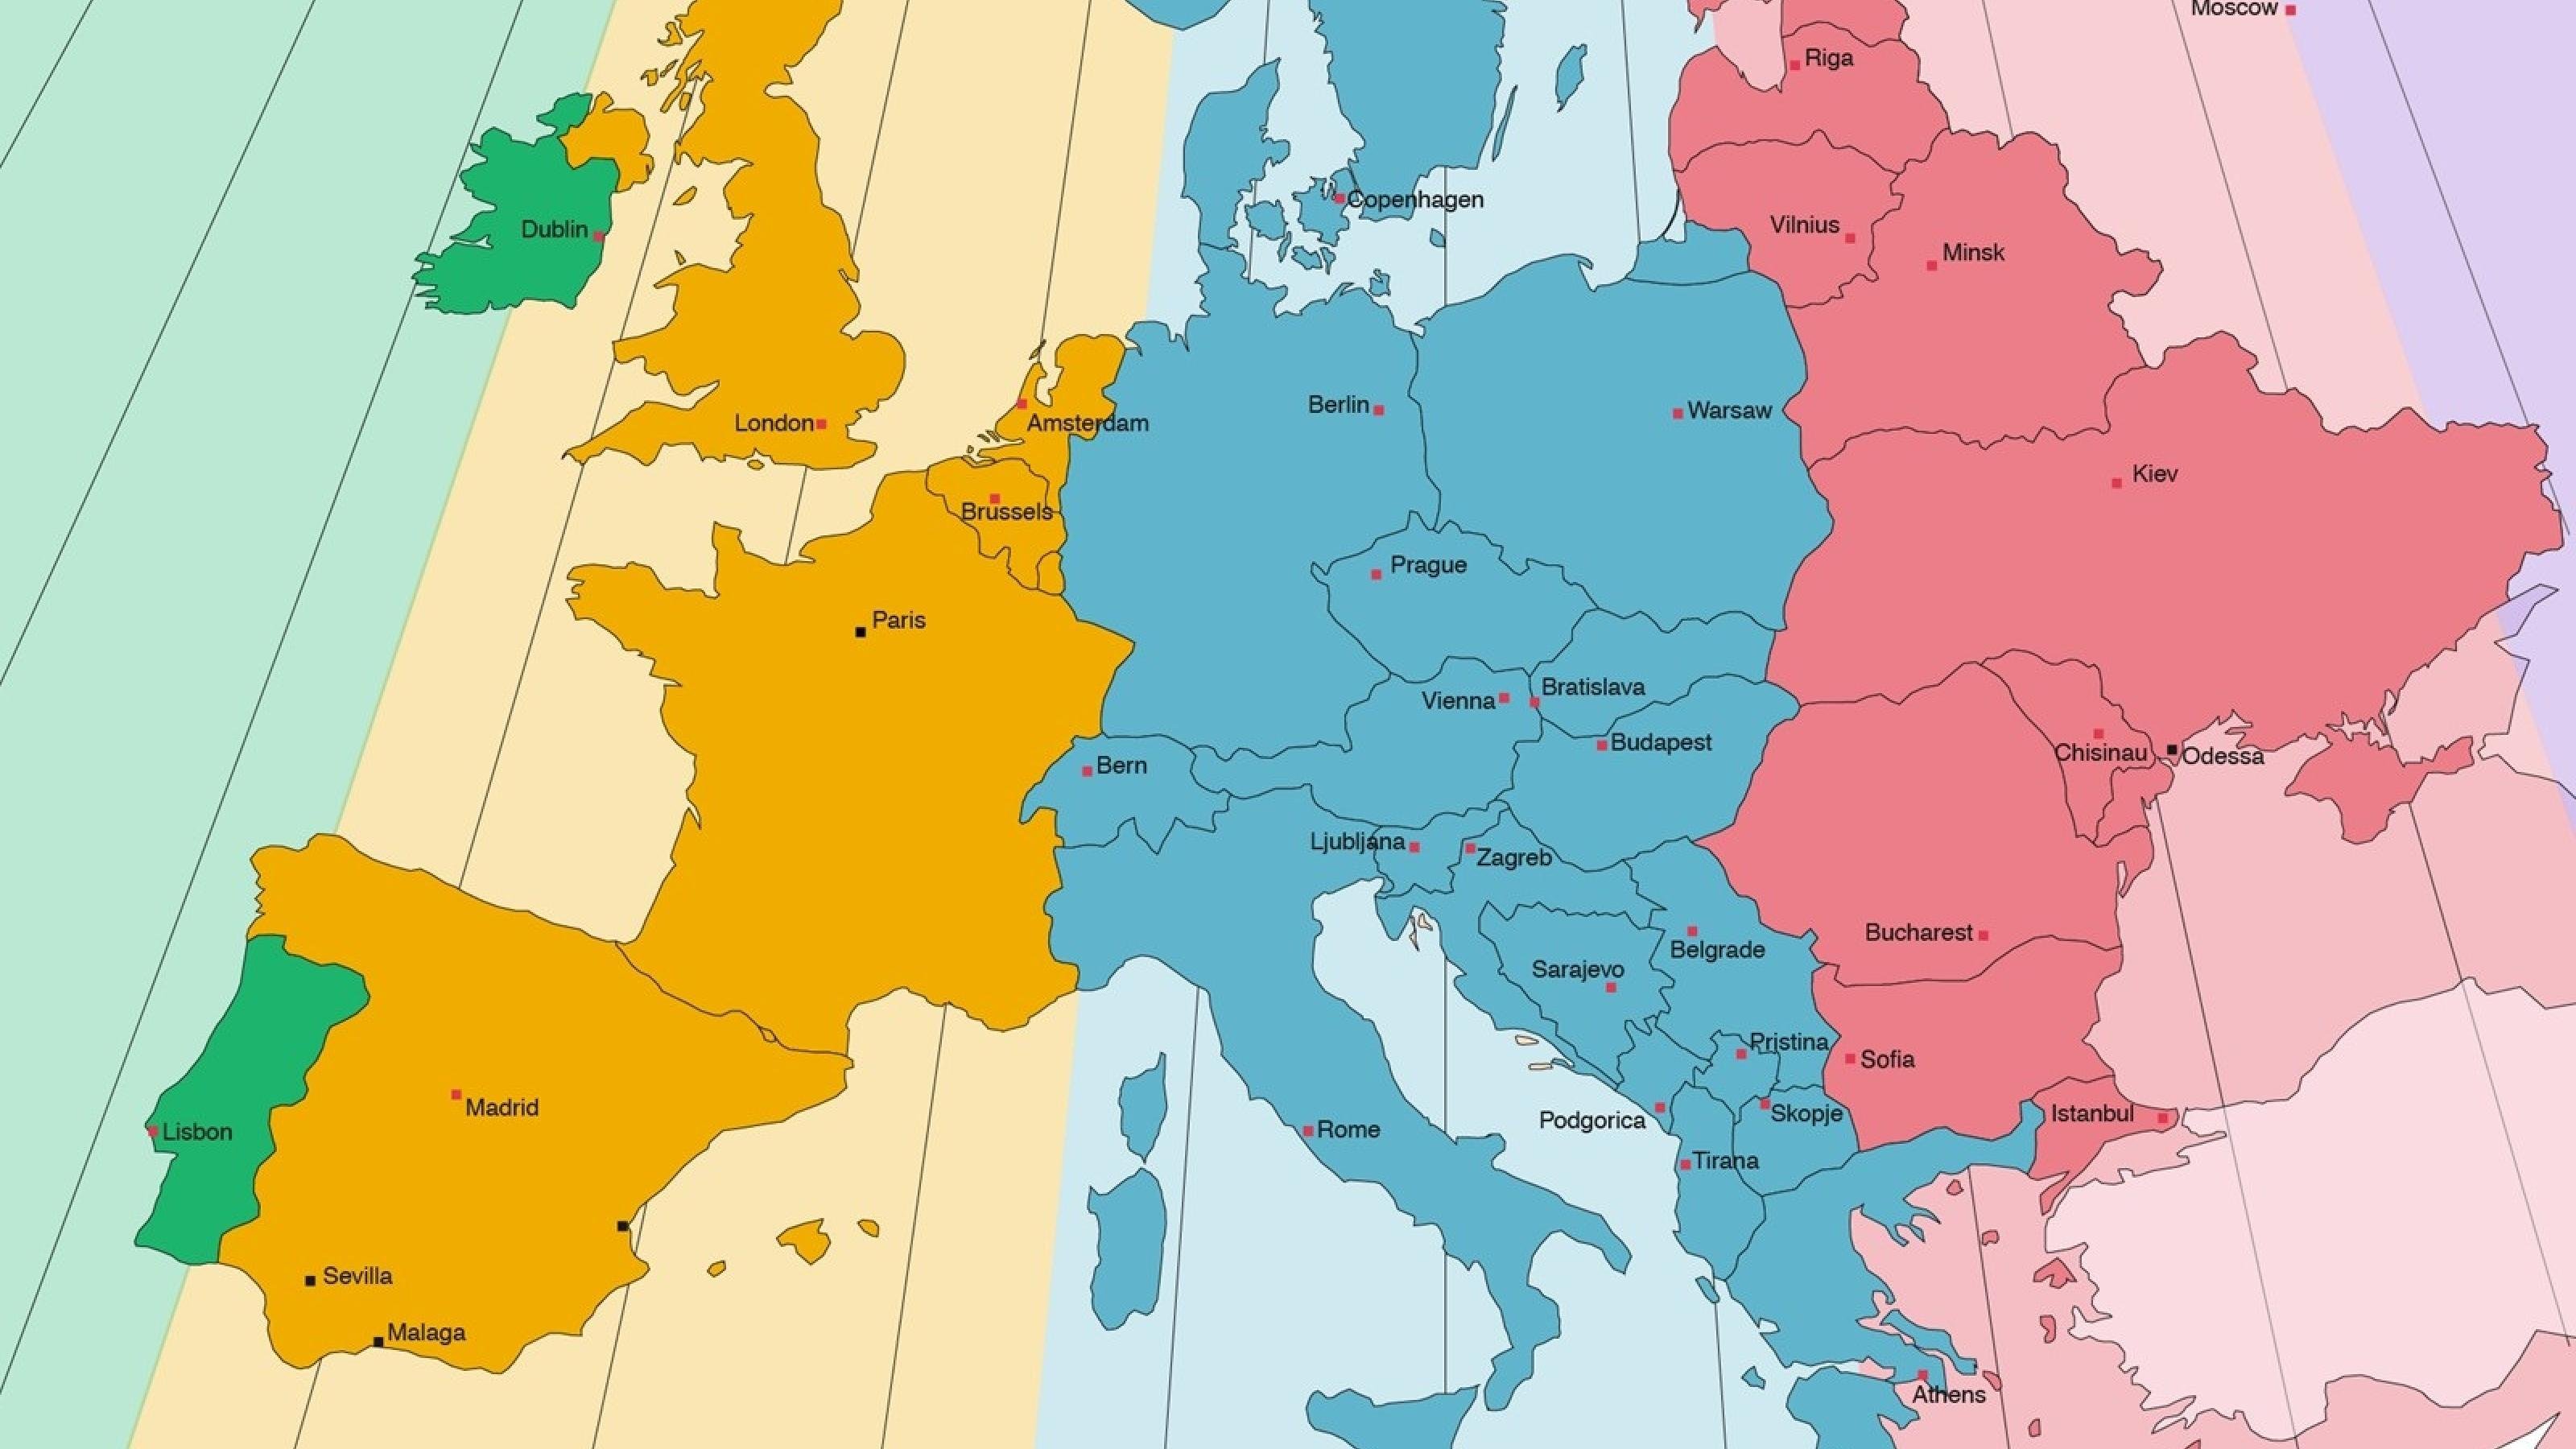 Eine Landkarte Europas. Die Länder sind unterschiedlich angefärbt, um verschiedene Zeitzonen anzudeuten.